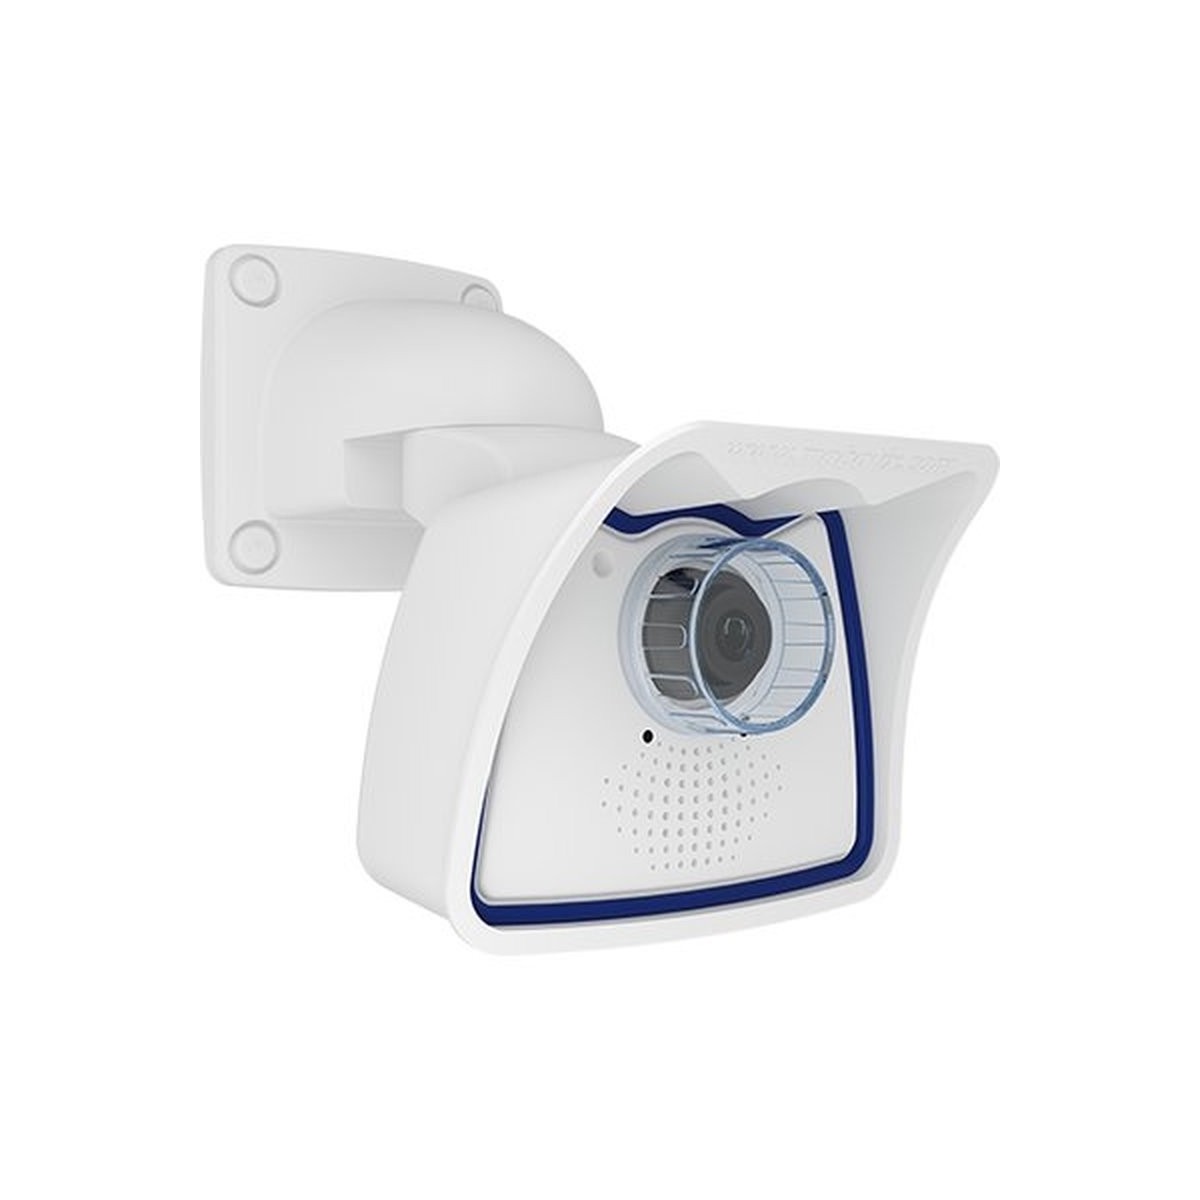 Mobotix Mx-M26B-6D016 - IP security camera - Outdoor - Wired - EN55032:2012; EN55022:2010; EN55024:2010; EN50121-4:2015; EN61000